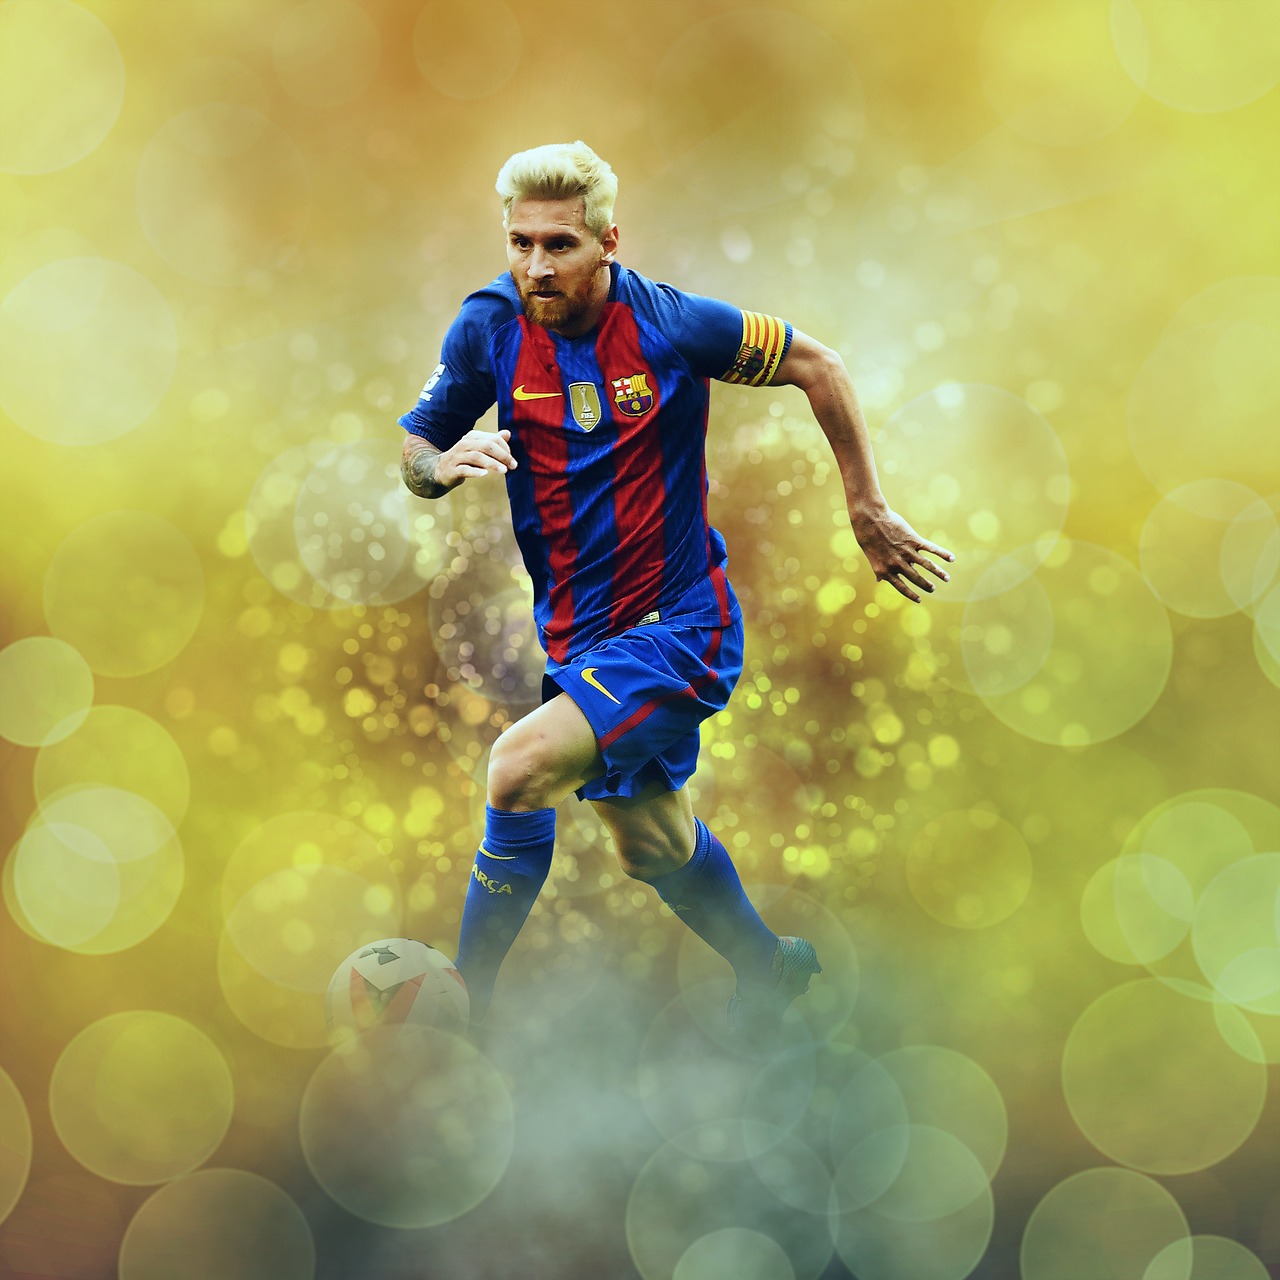 Messi är en av världens bästa fotbollsspelare